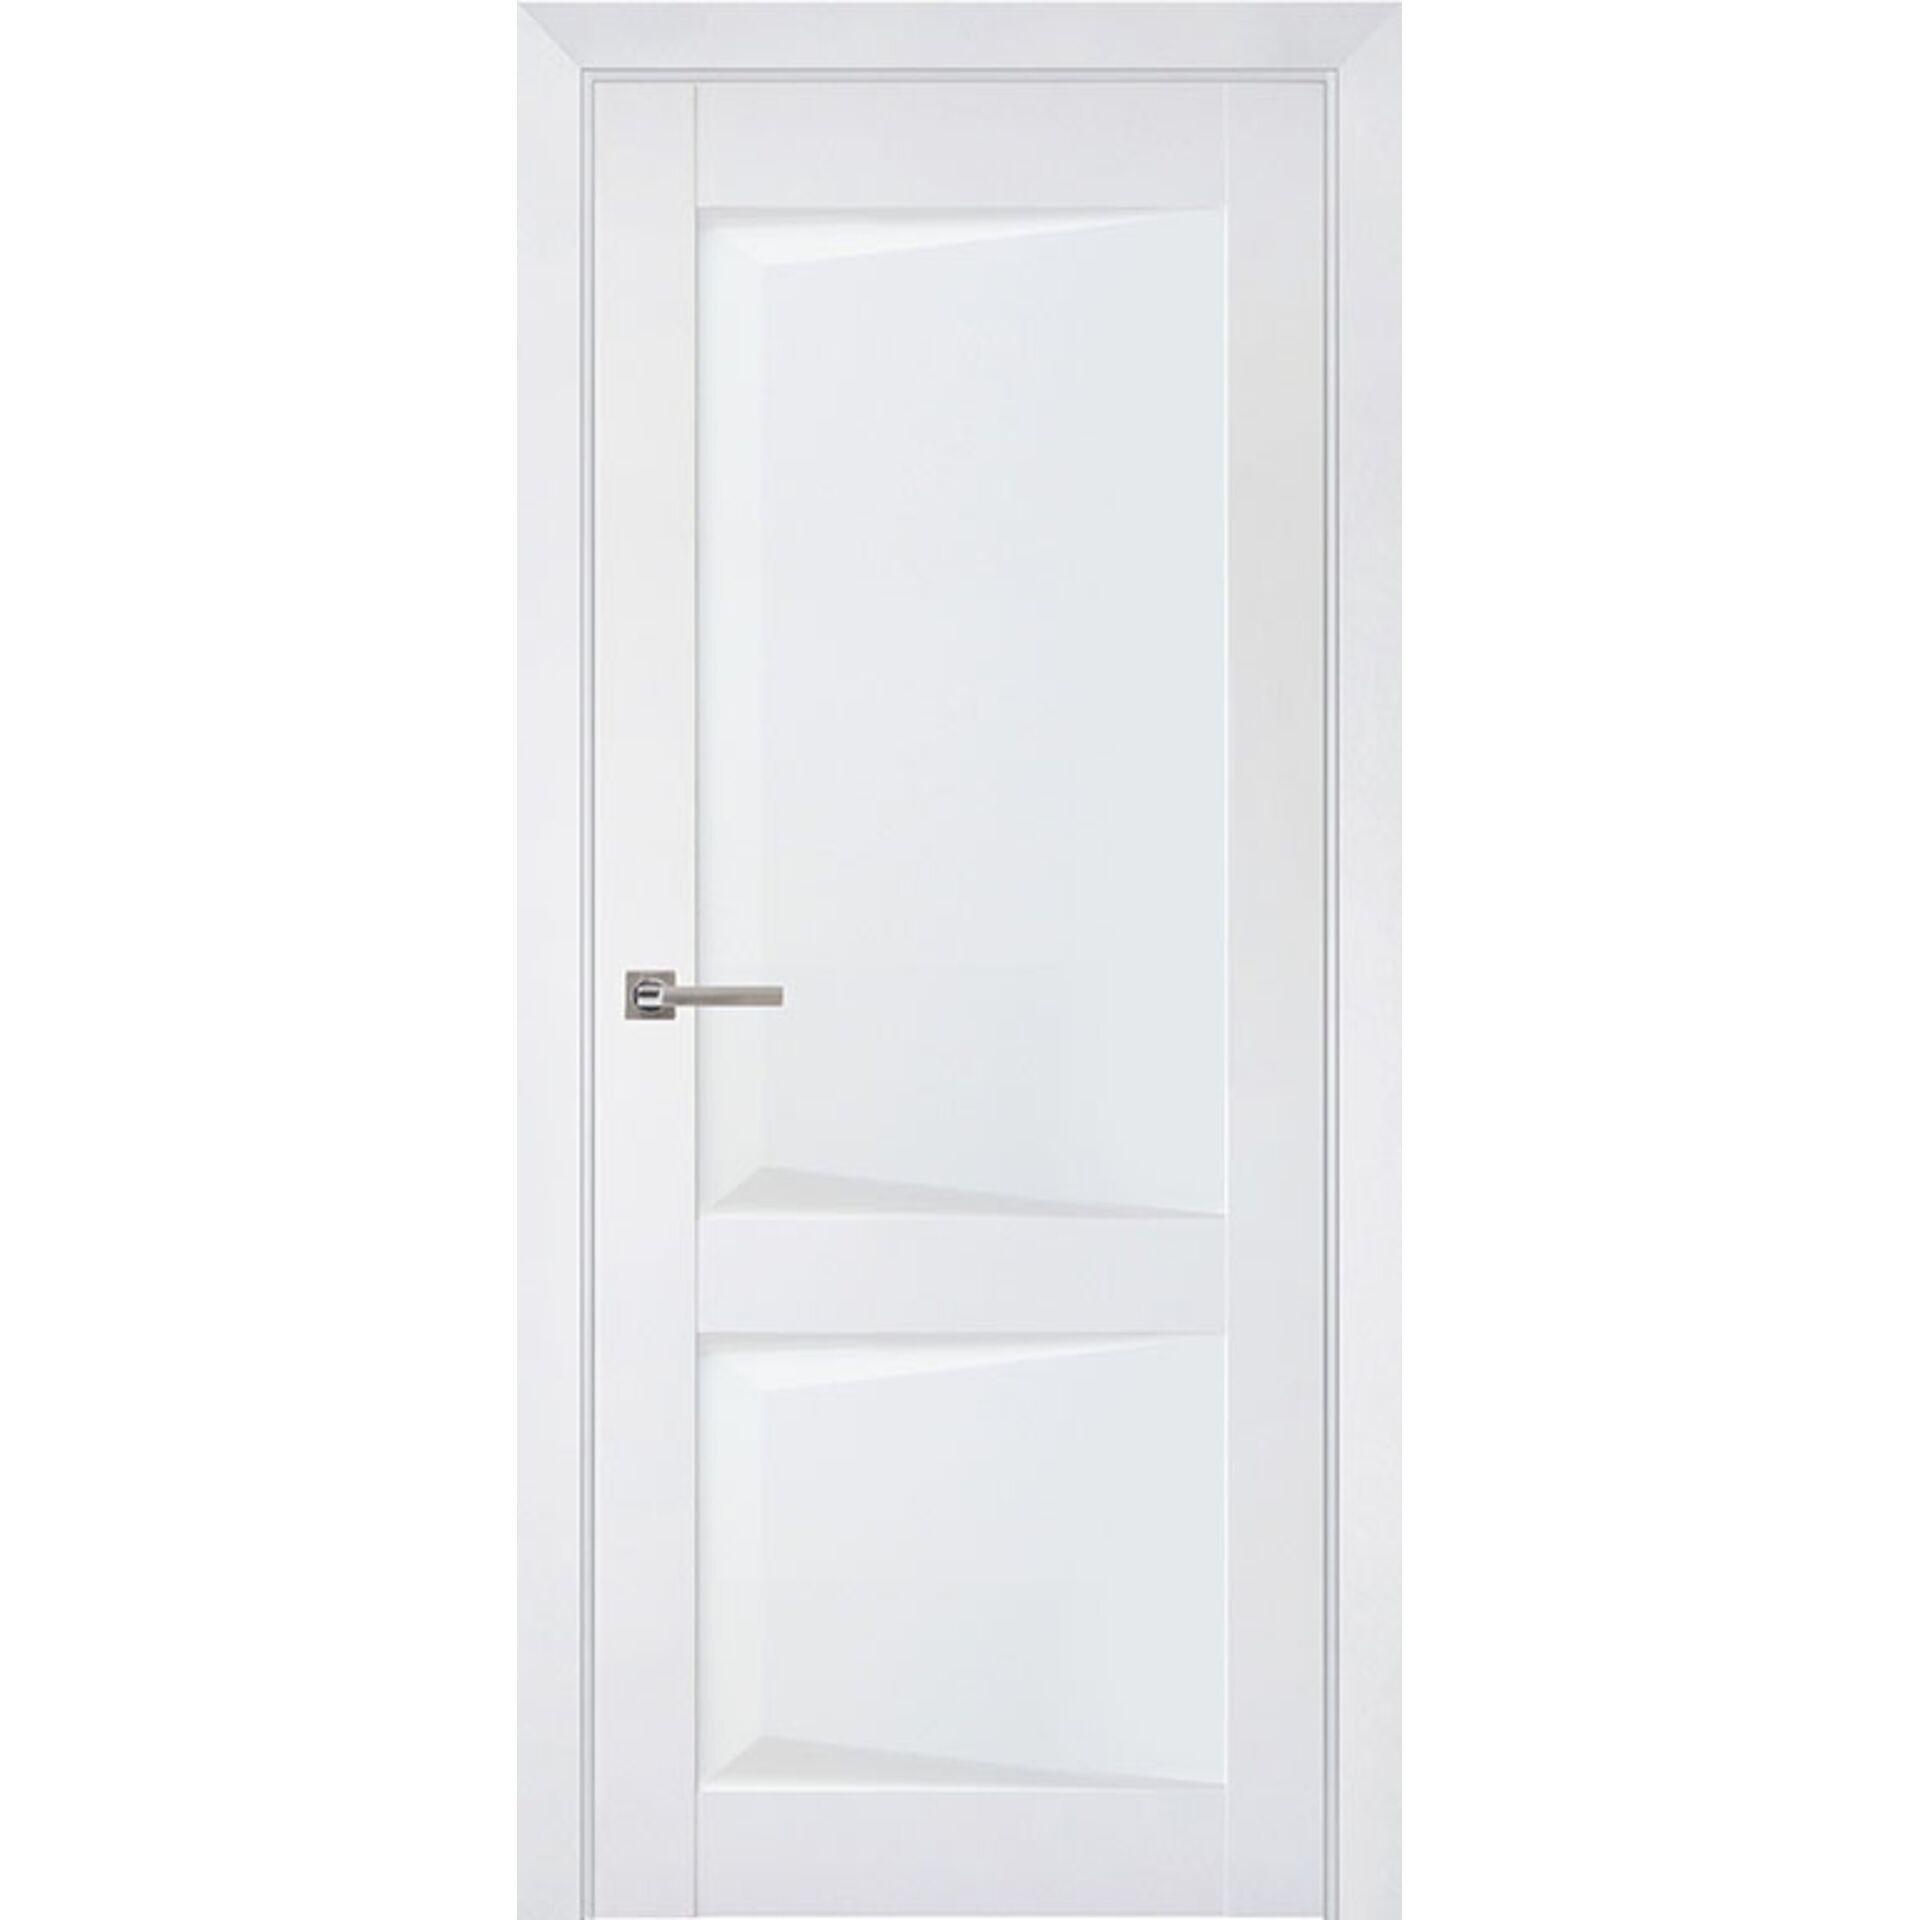 Двери межкомнатные Perfecto 102 белый бархат, полотно 80*200